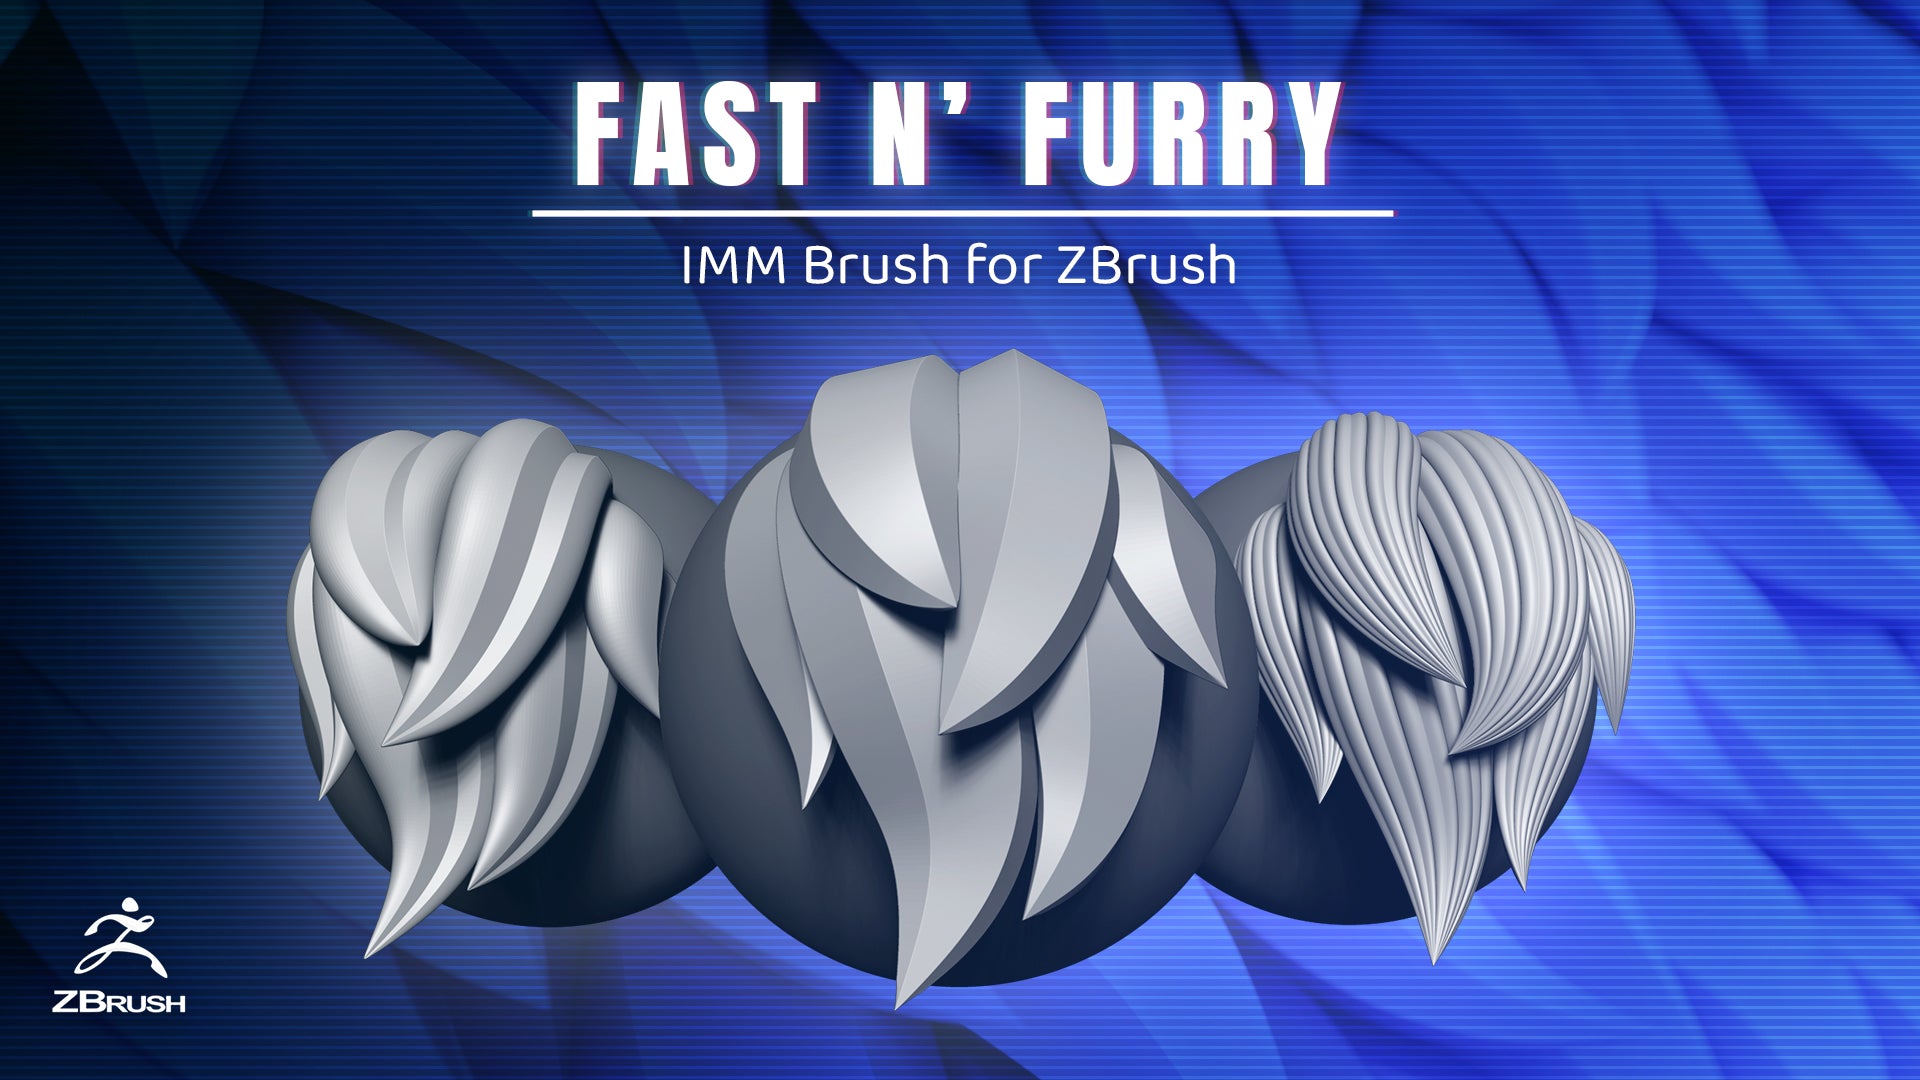 Fast N Furry IMM Brush